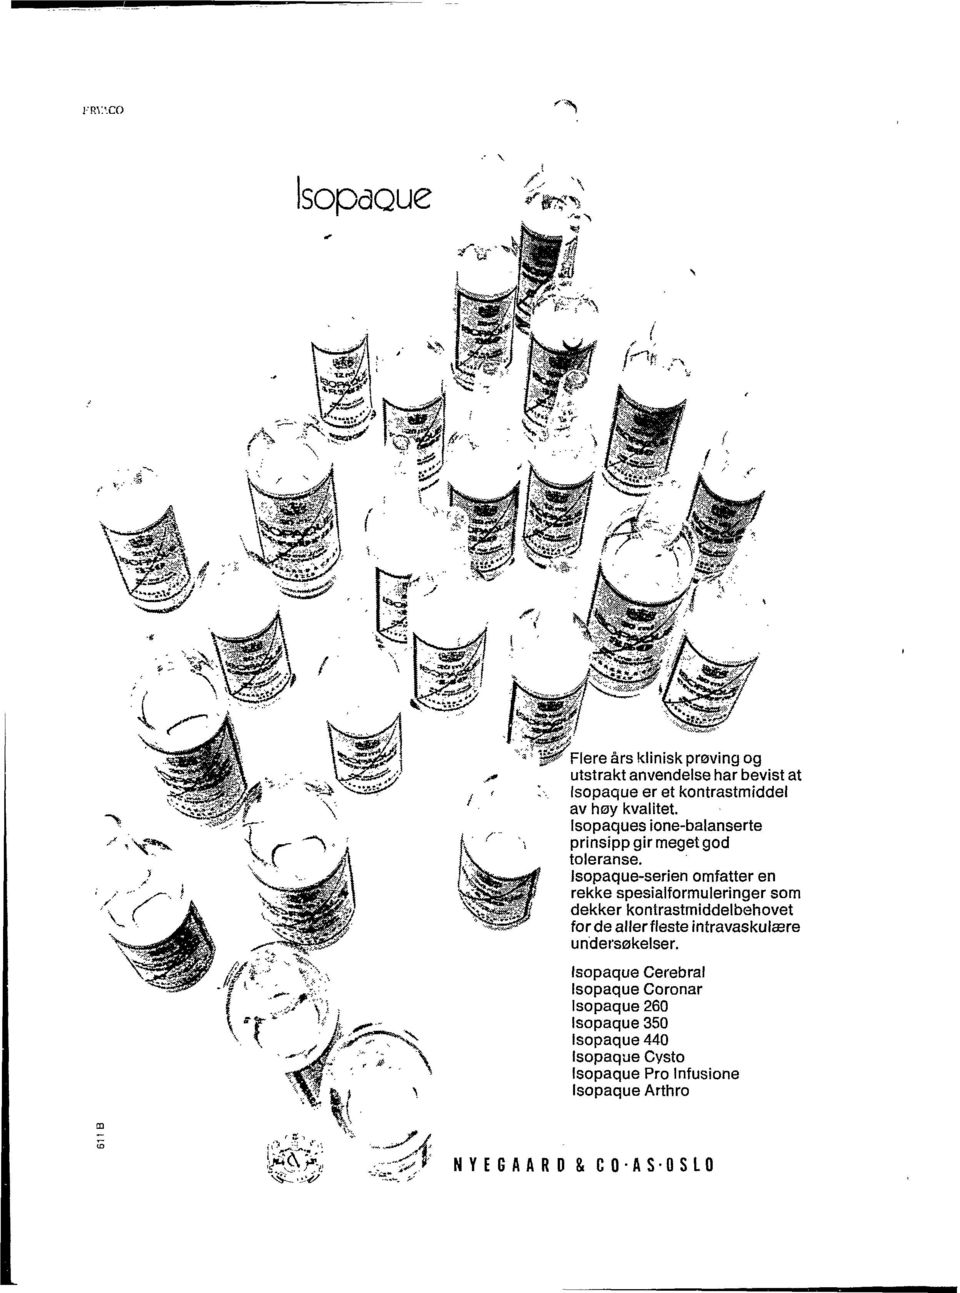 Isopaque-serien omfatter en rekke spesialformuleringer som dekker kontrastmiddelbehovet forde allerfleste